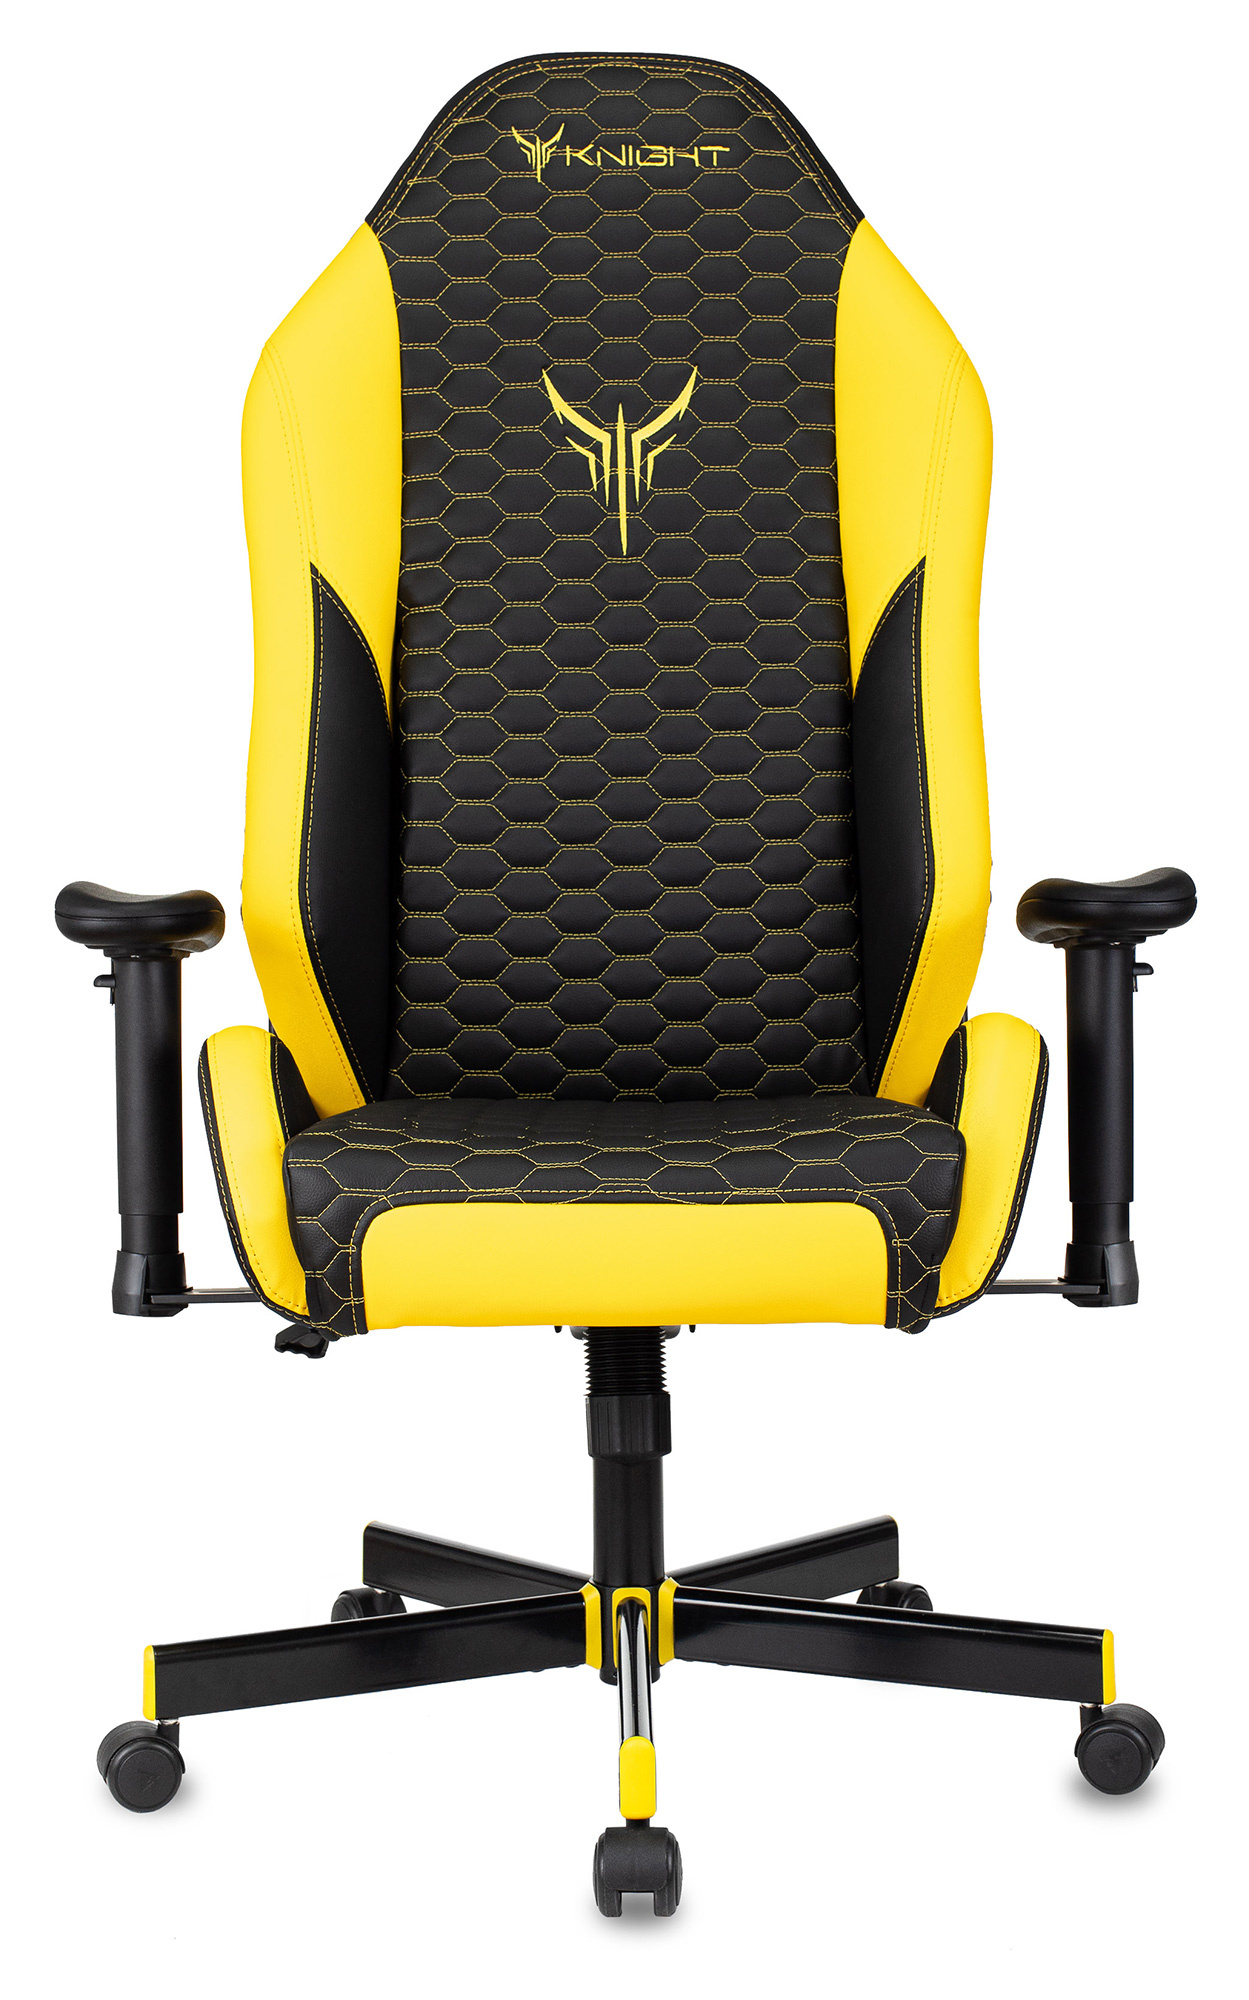 Кресло игровое Knight Neon черный/желтый соты эко.кожа с подголов. крестов. металл